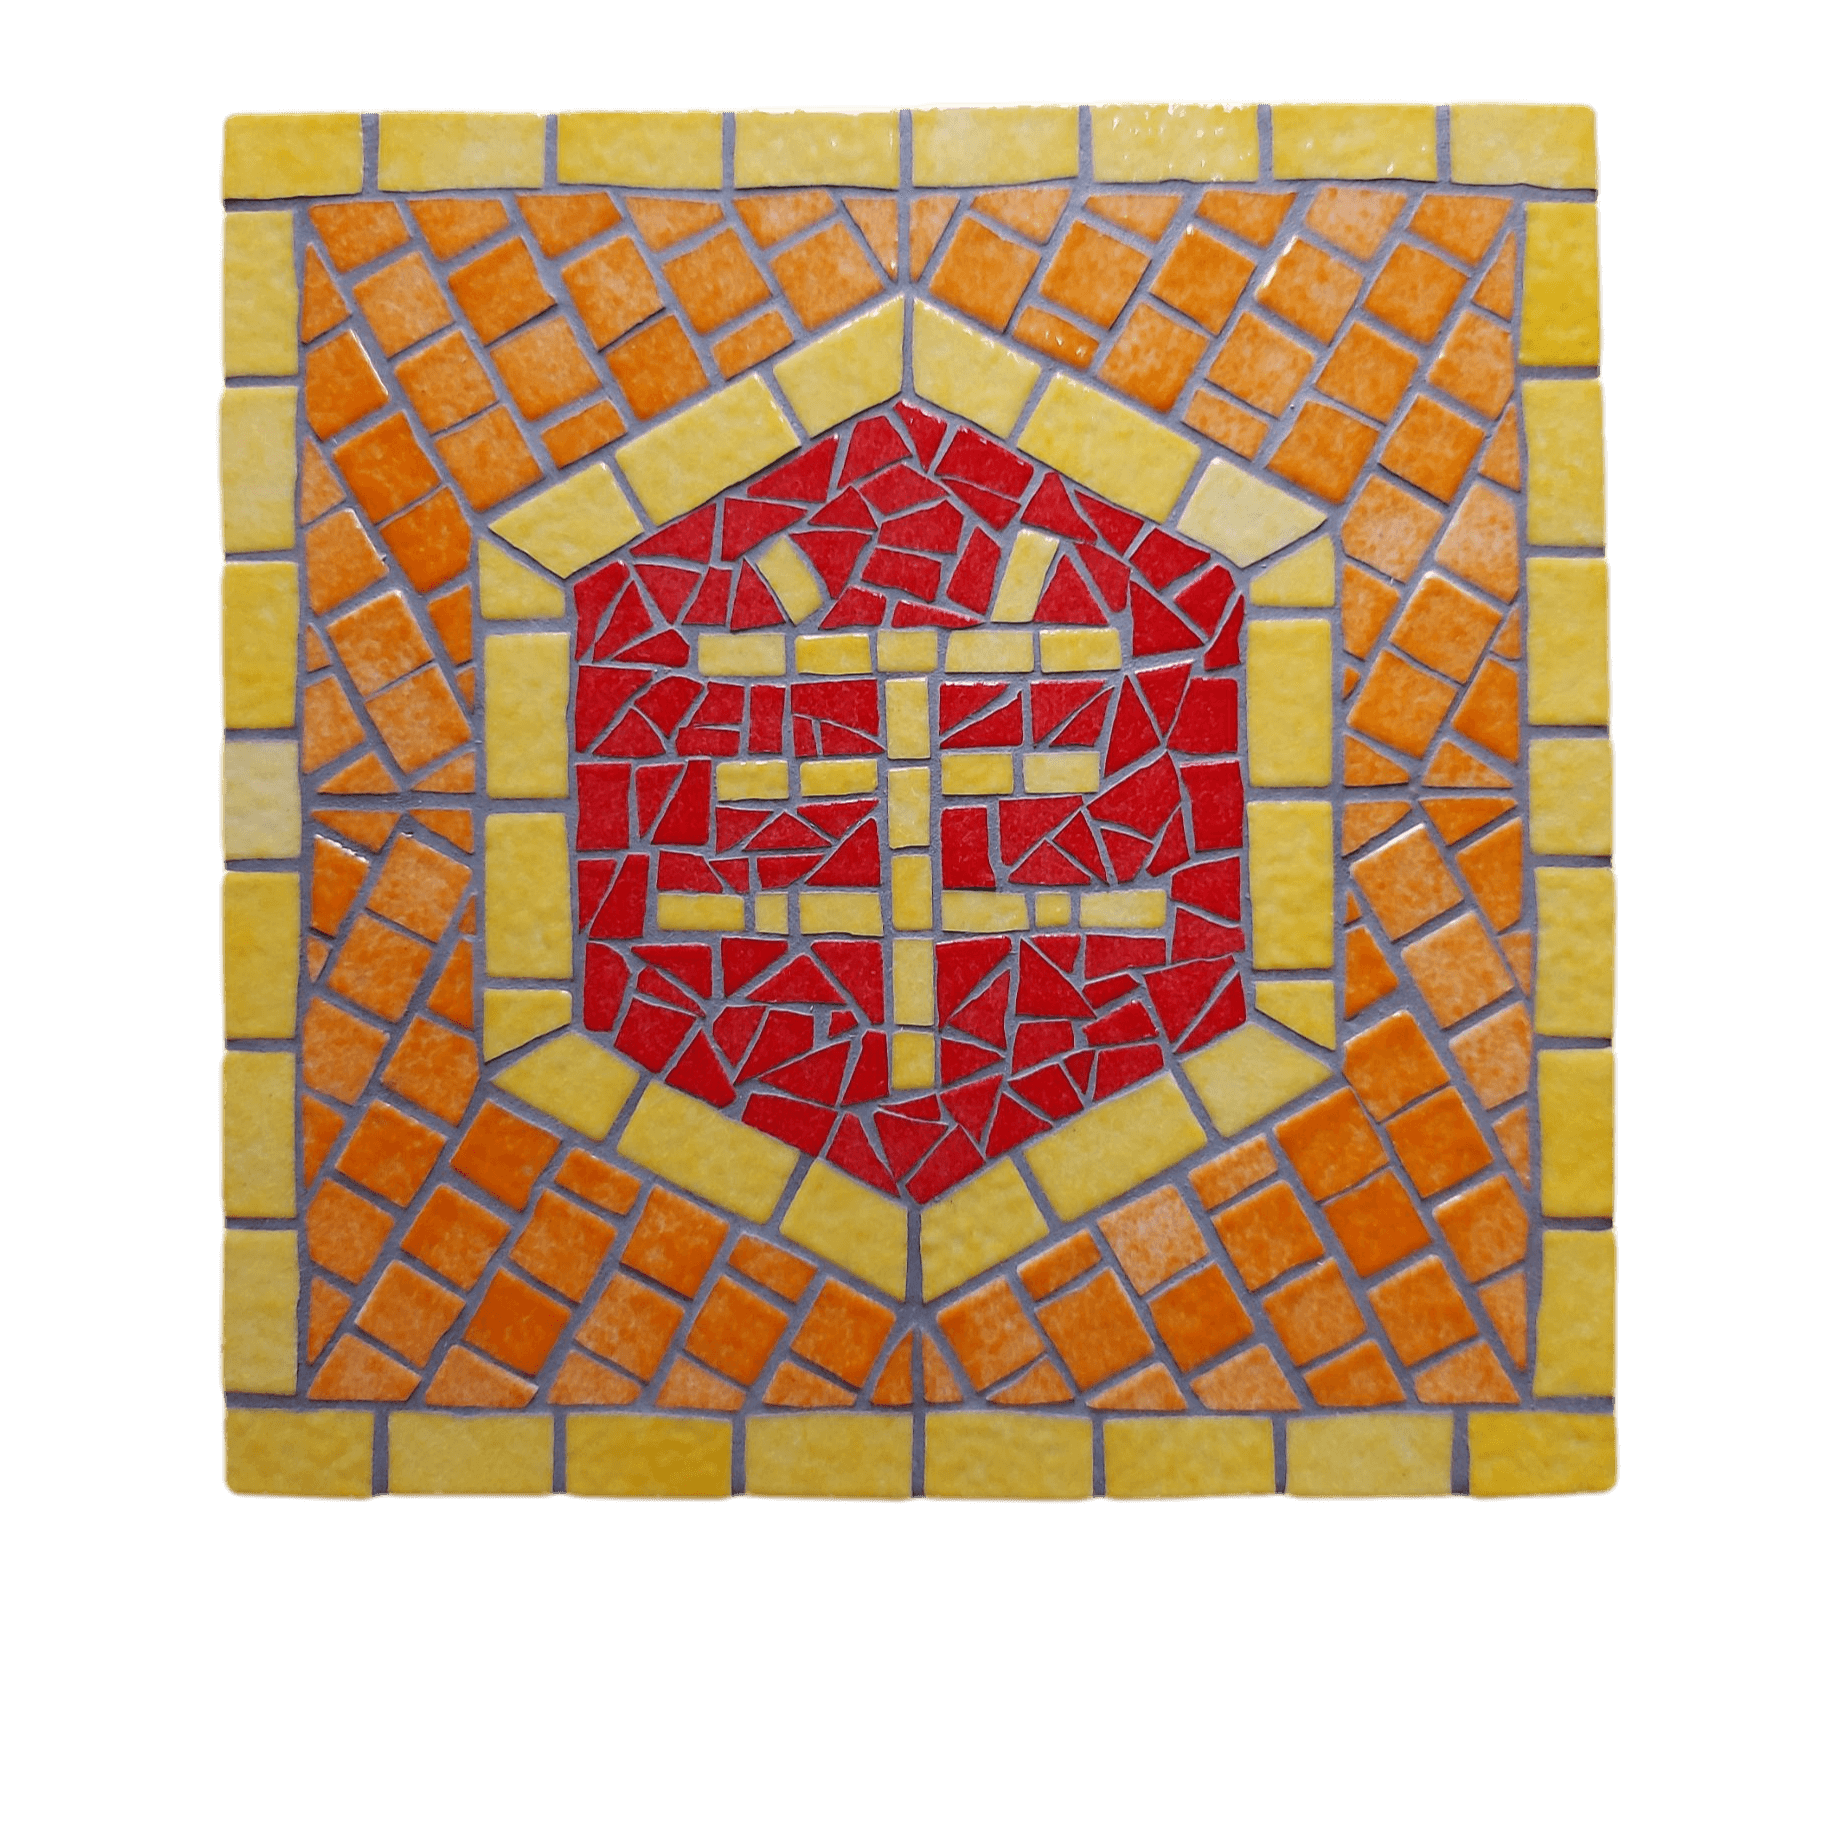 Artisanal Chinese zodiac mosaic, Goat sign, yellow line